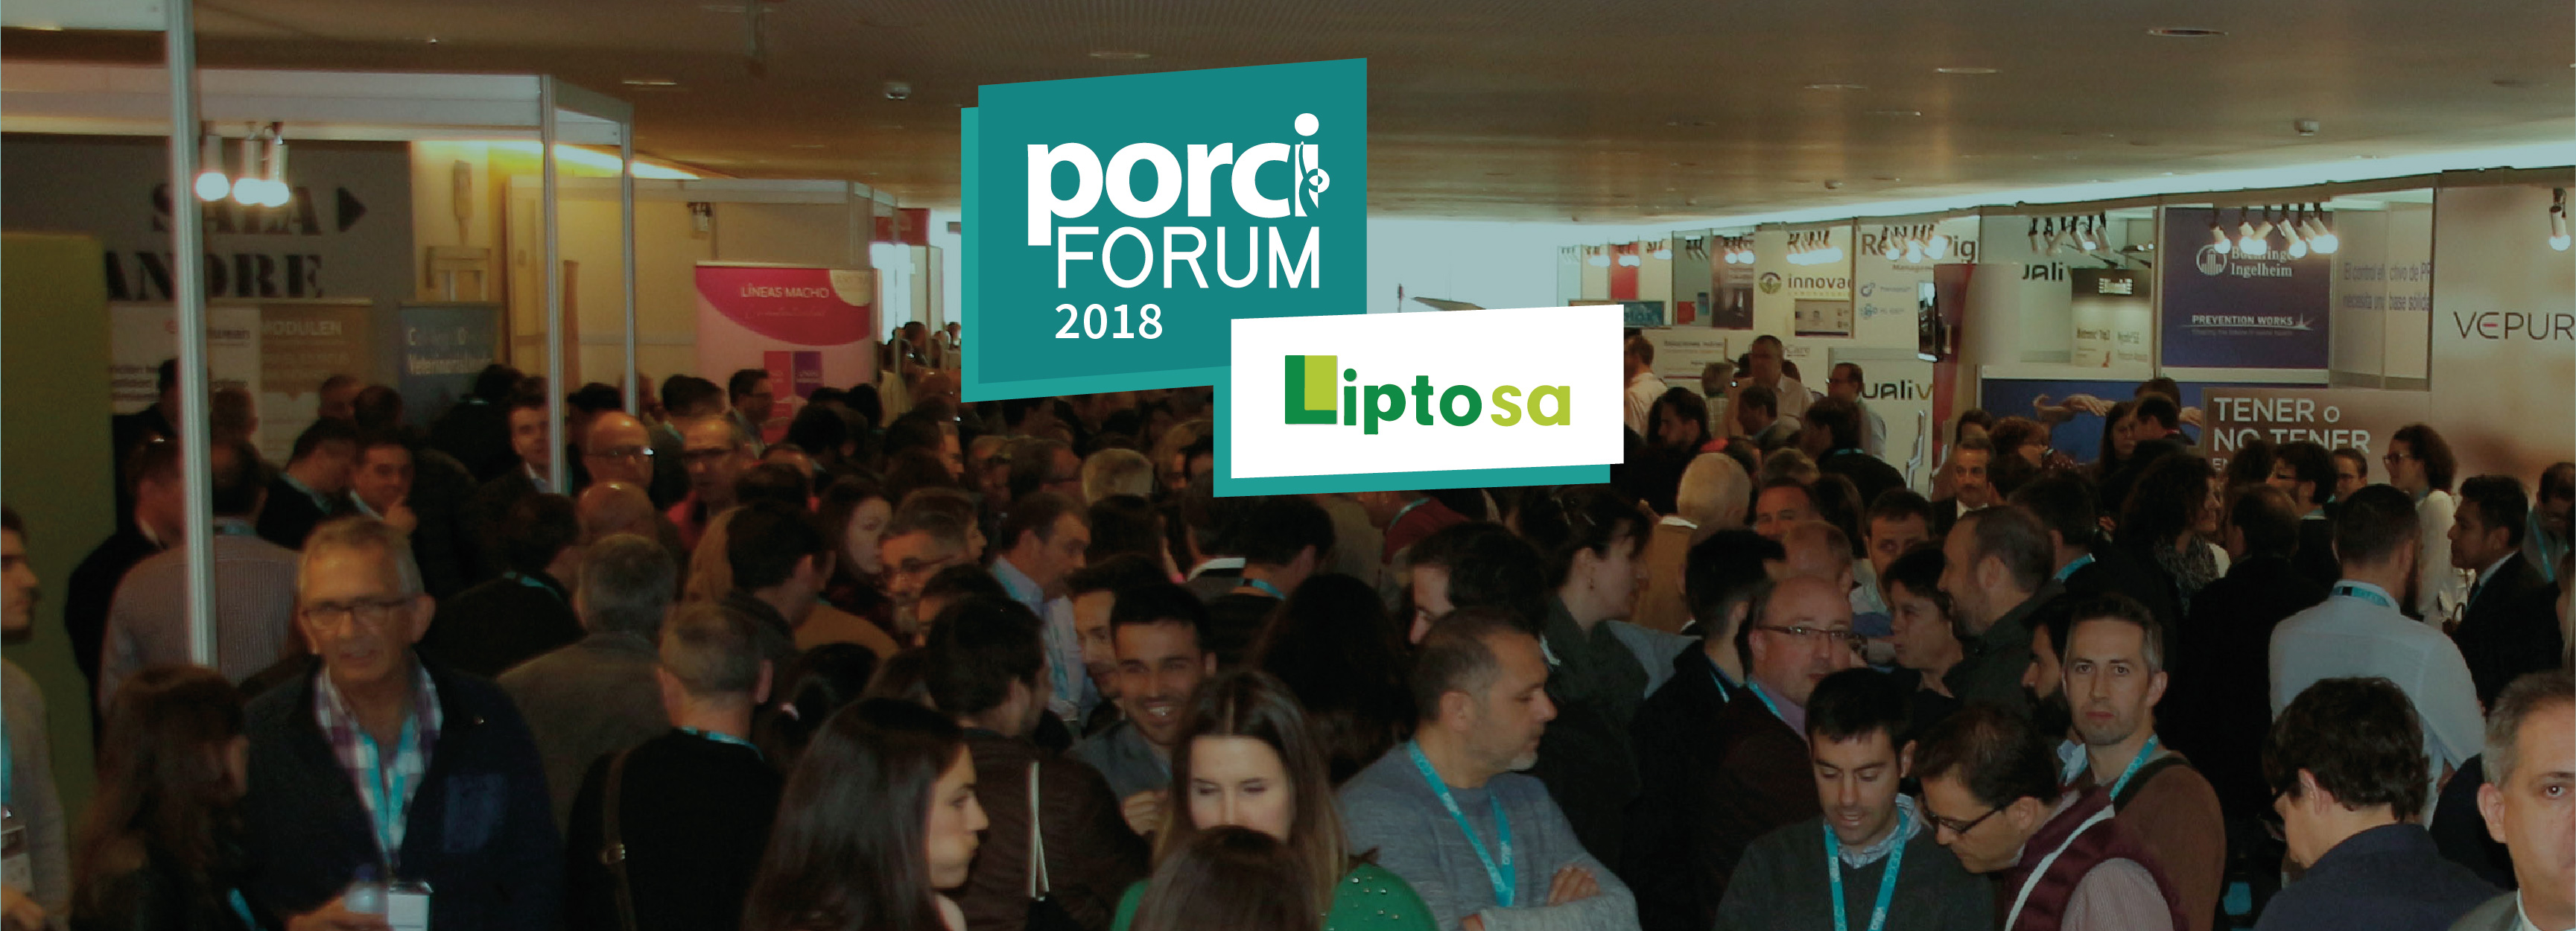 Lípidos Toledo SA presente en el patrocinio del porciFORUM 2018...